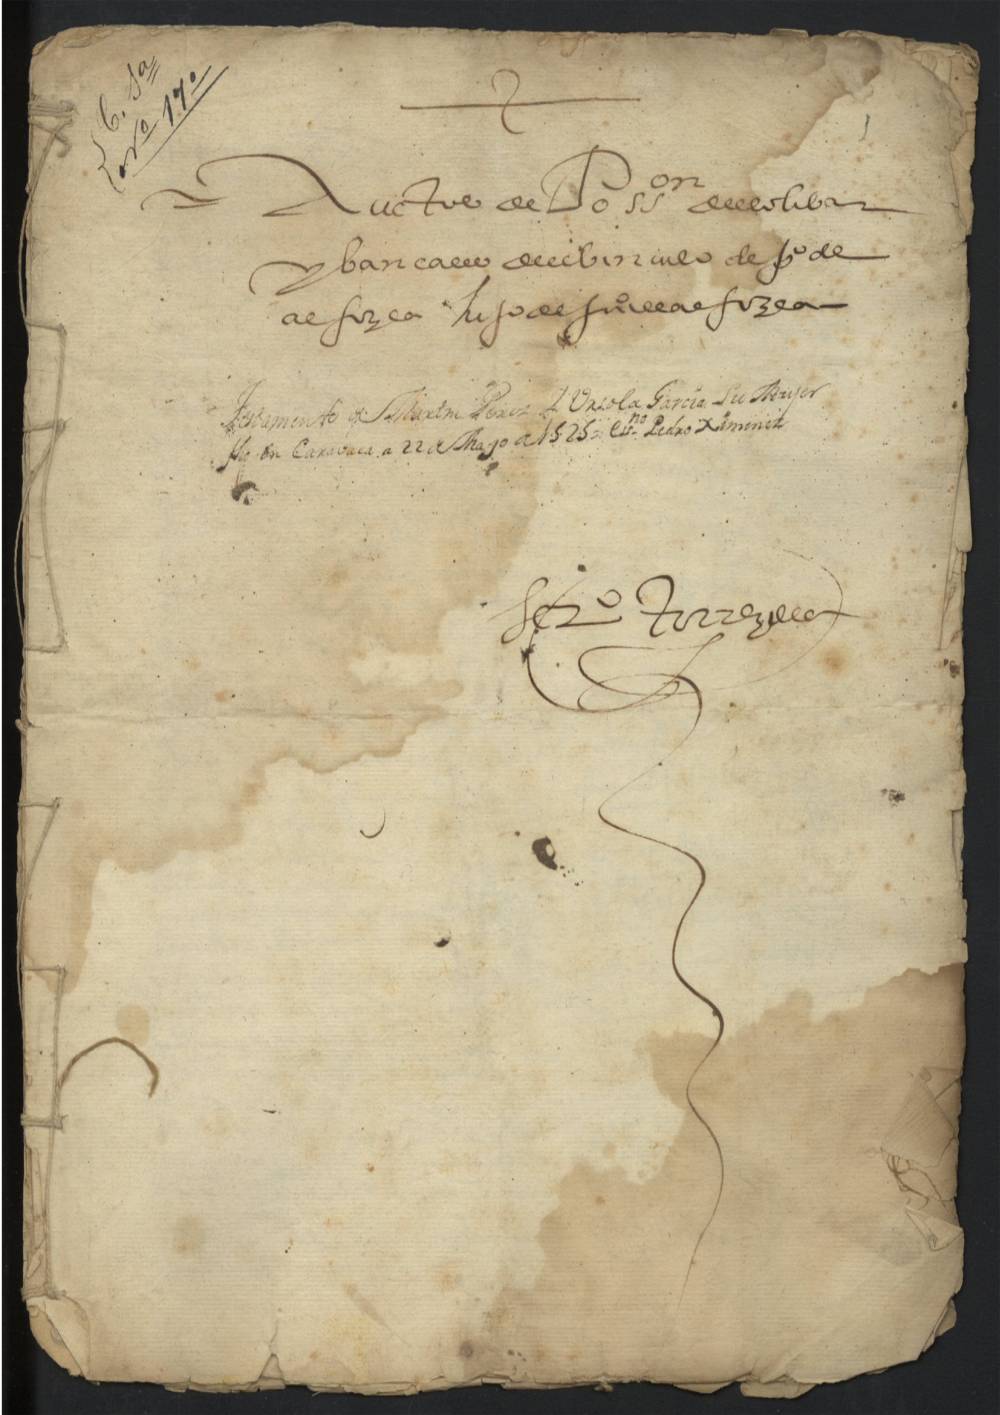 Testamento de Martín Pérez y Autos de posesión de un olivar y bancales del vínculo de Pedro de Alfocea, hijo de Juan de Alfocea.